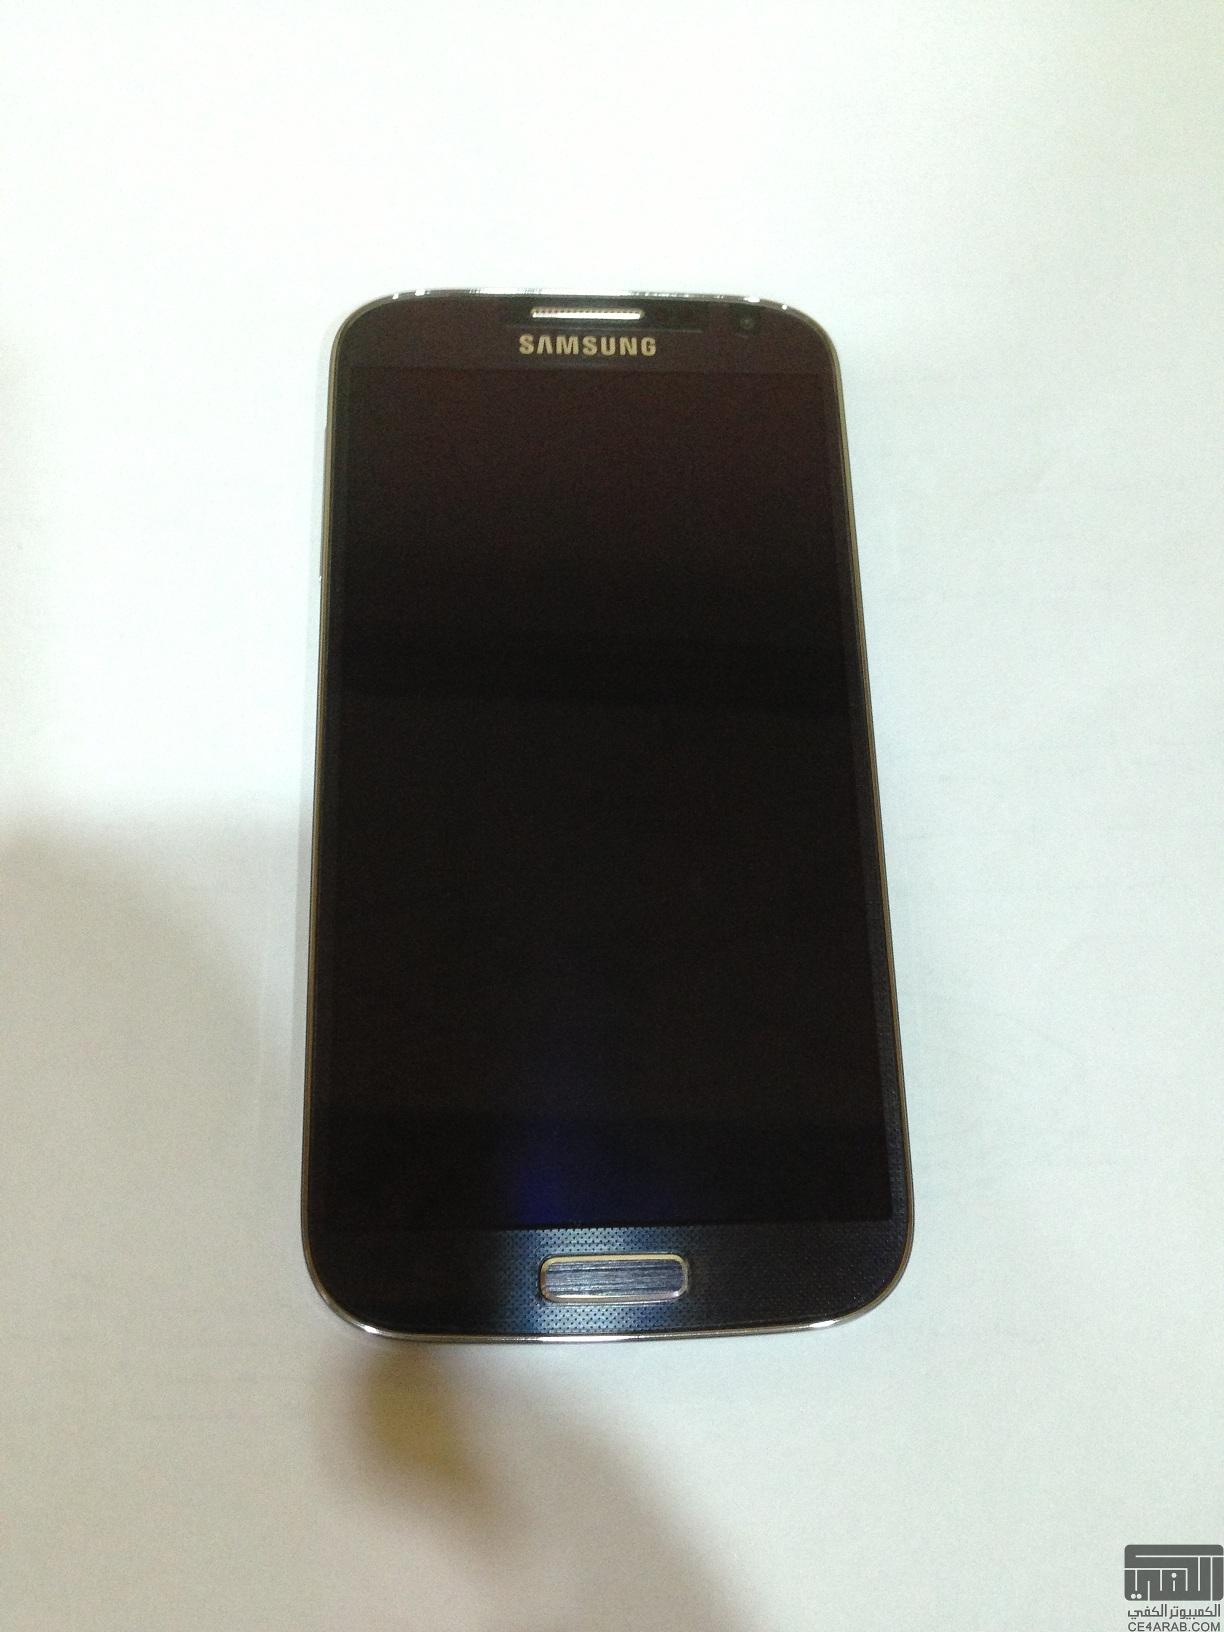 للبيع Samsung GALAXY S4 I9505 LTE 4G - الرياض